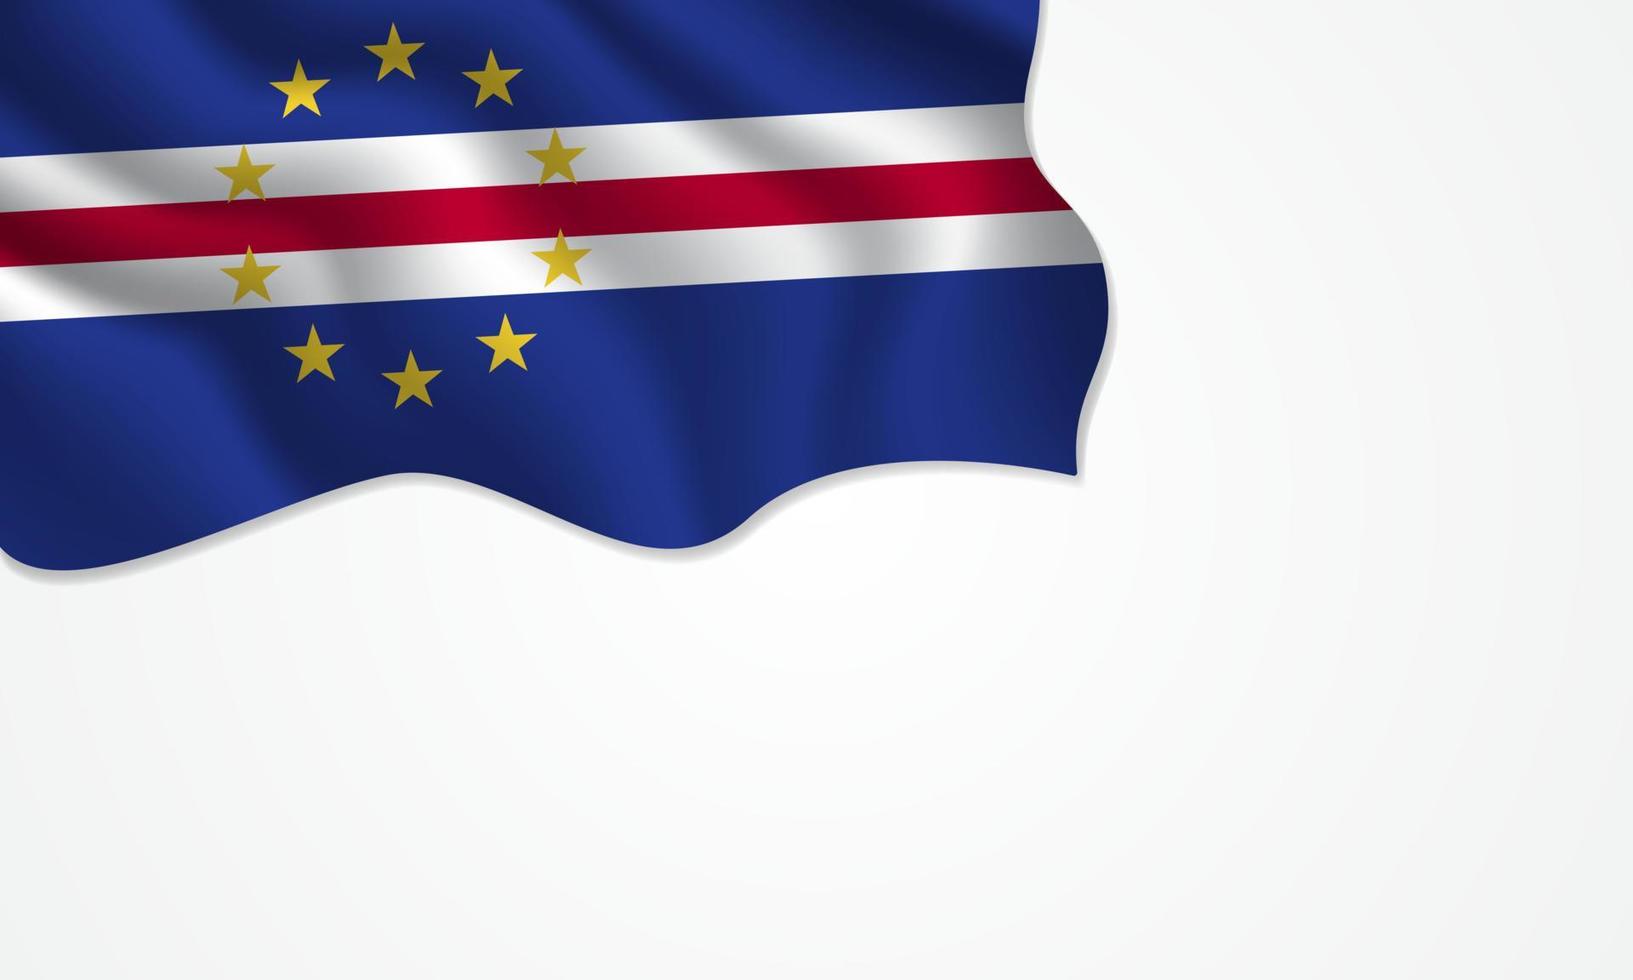 Kaapverdië vlag zwaaien illustratie met kopie ruimte op geïsoleerde achtergrond vector